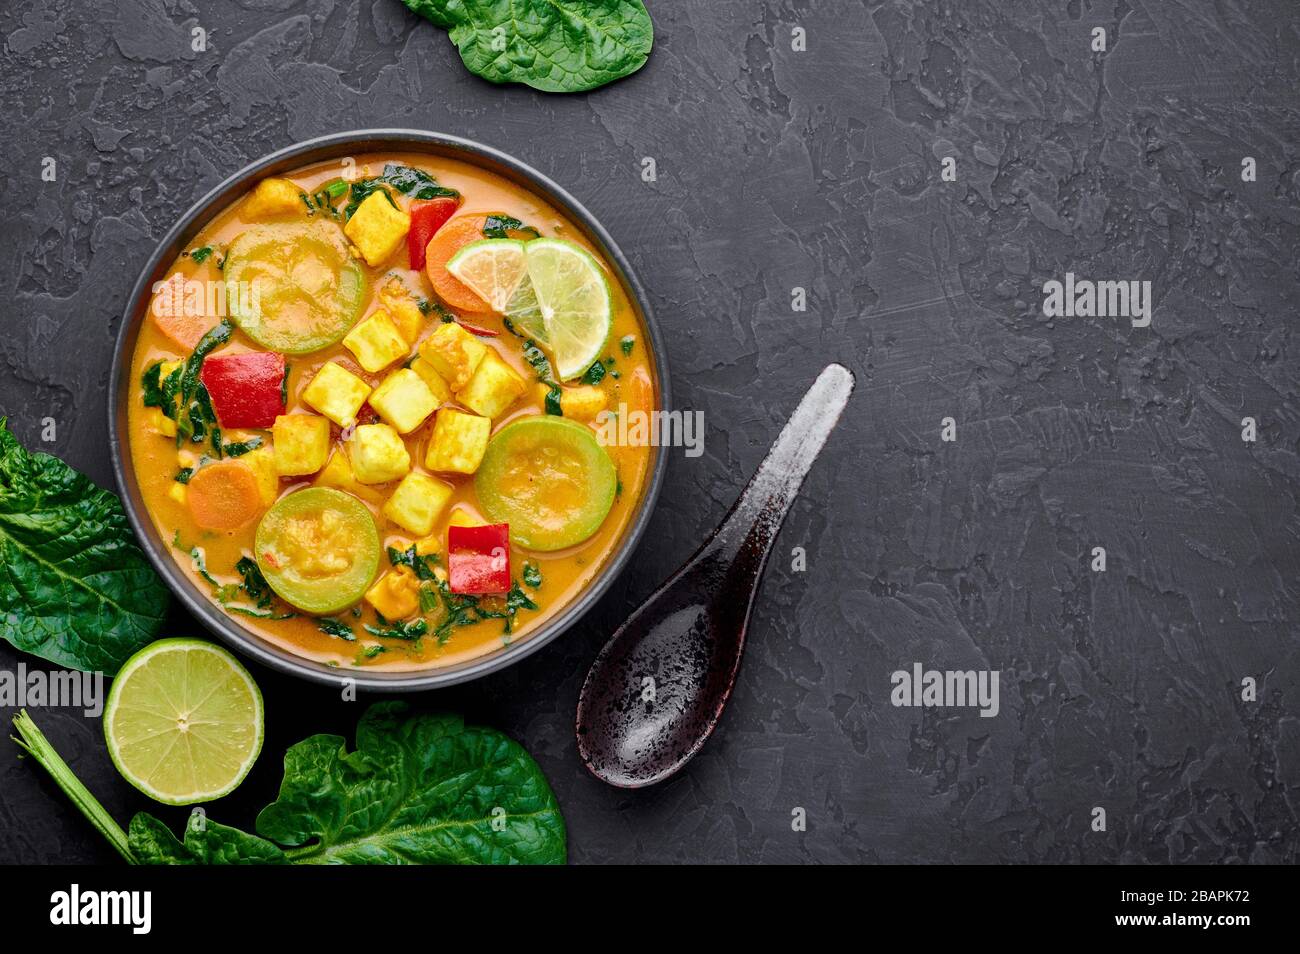 Veau jaune curry thaïlandais avec tofu et légumes dans un bol noir sur fond d'ardoise sombre. Curry thaïlandais végétarien avec tofu, courgettes, poivre, épinards, voiture Banque D'Images